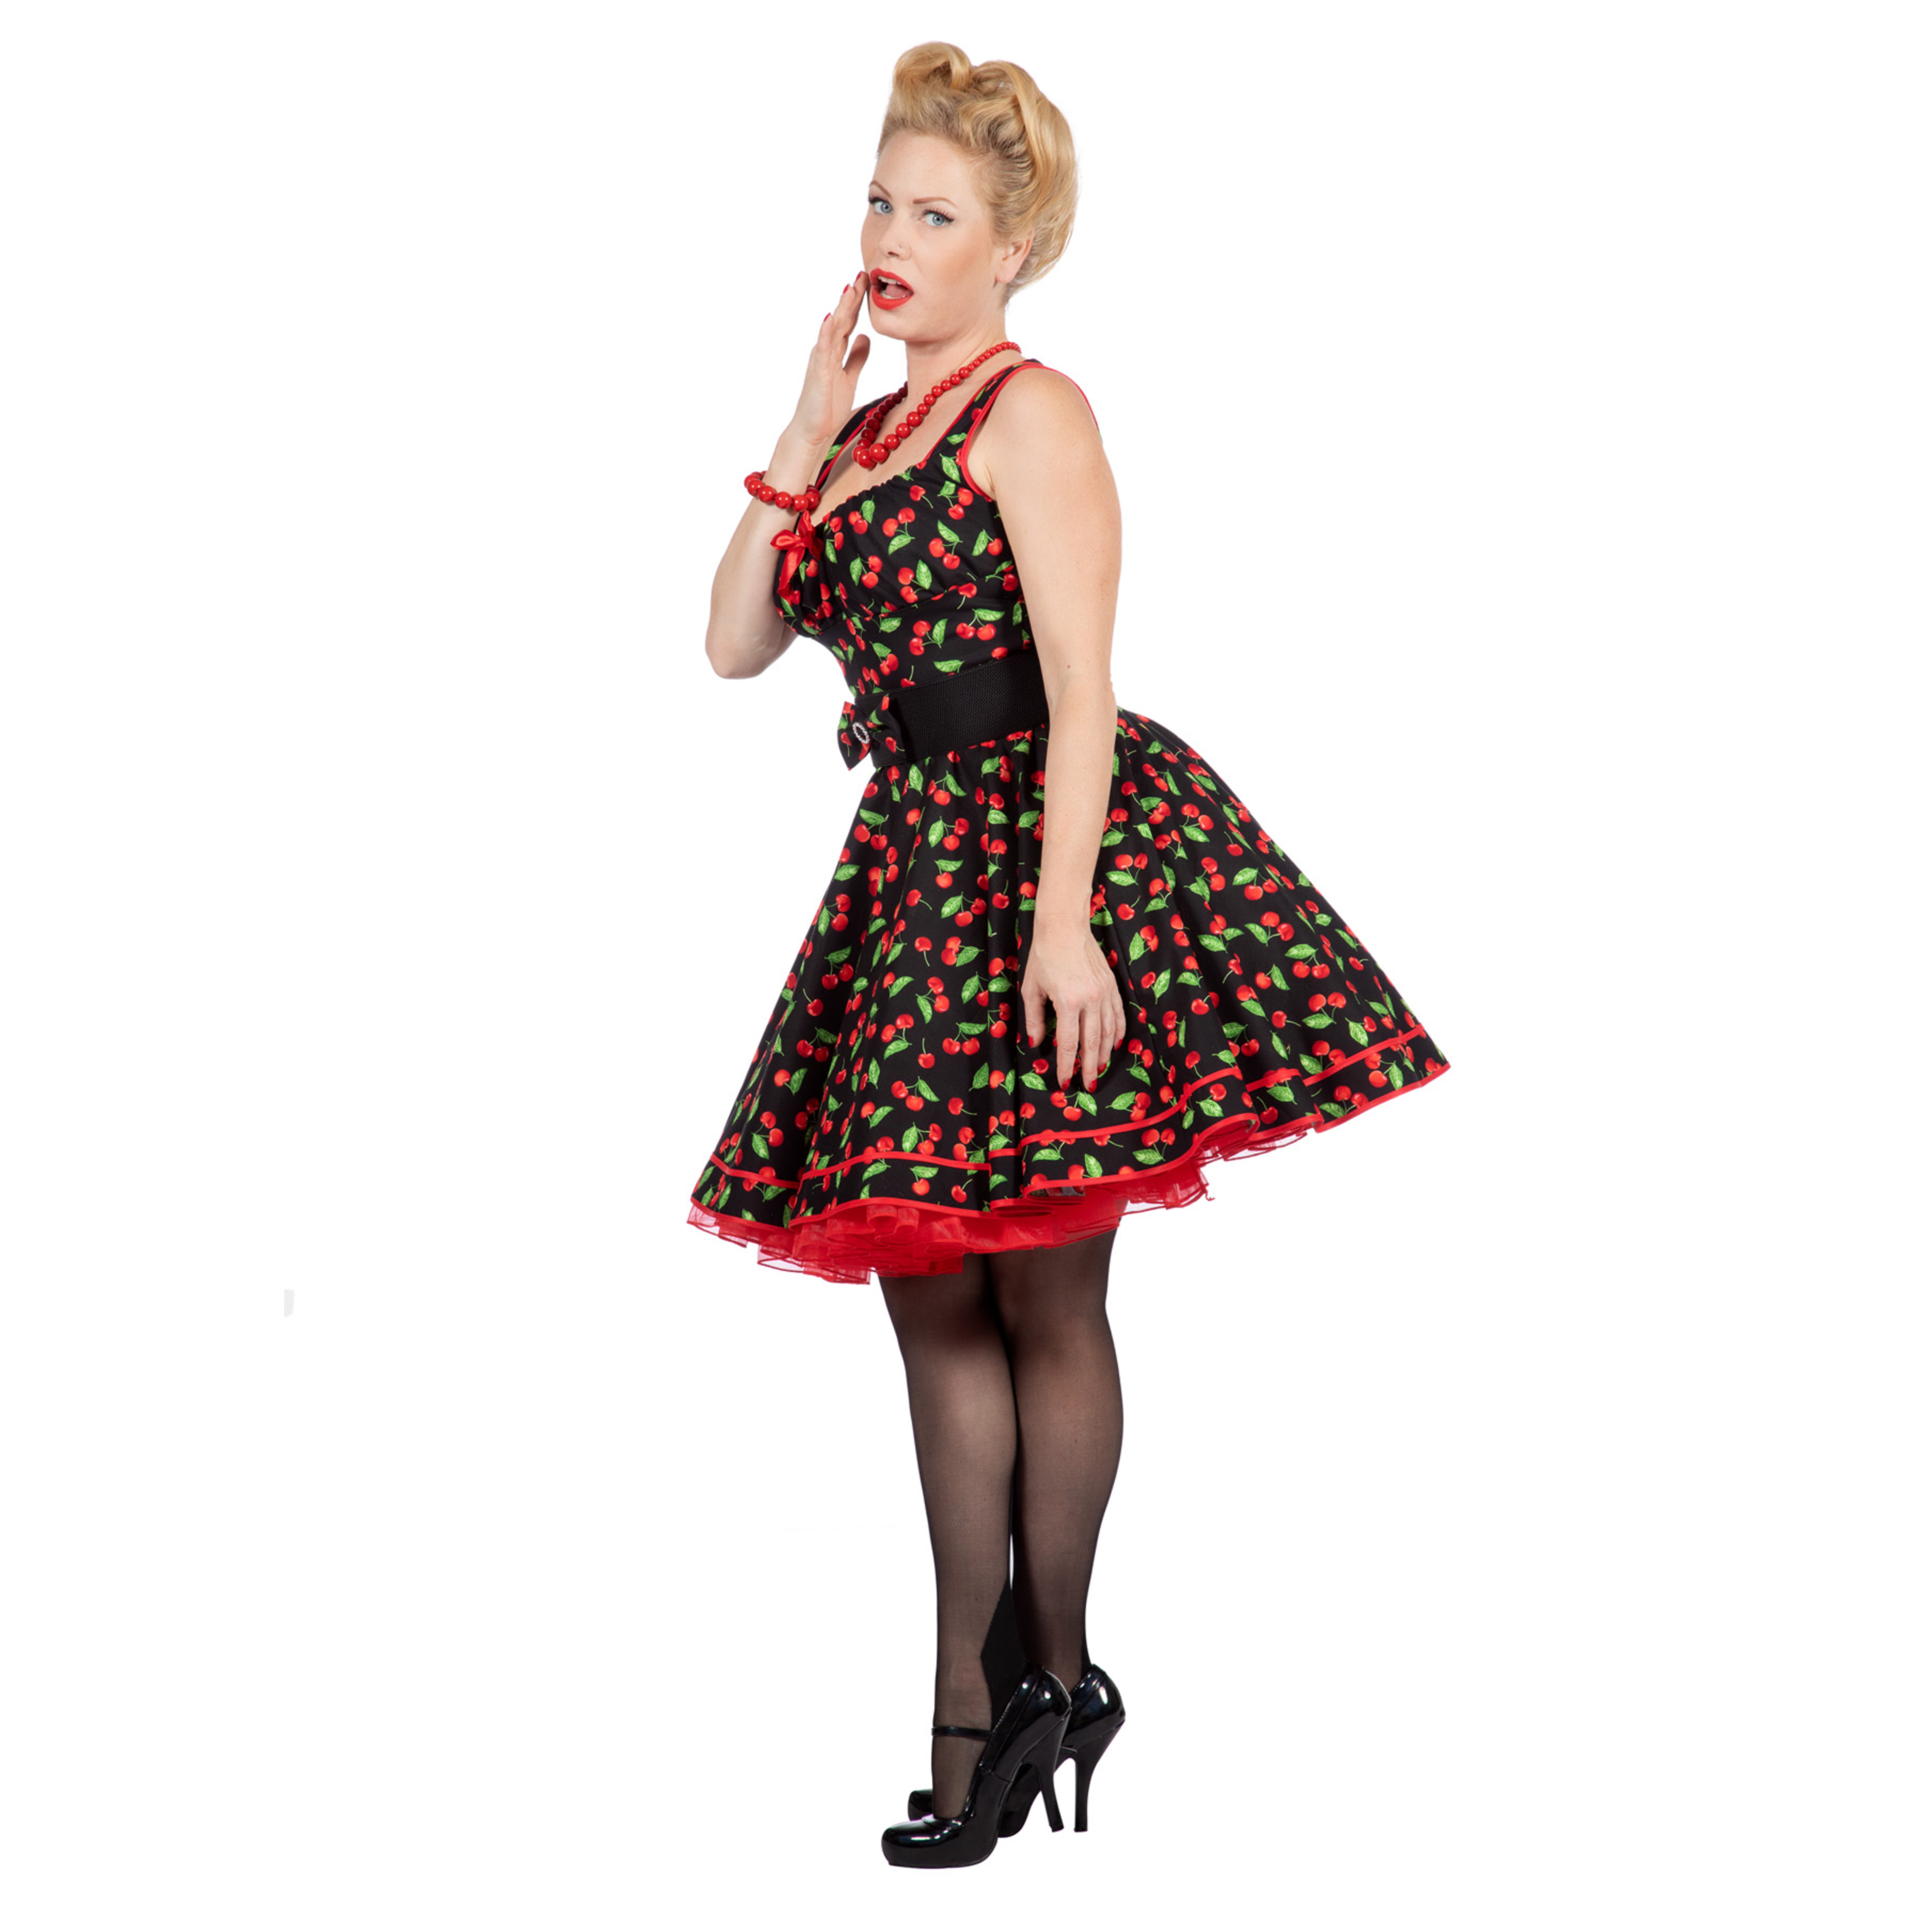 Premium-Line Damen-Kleid Rockabilly Cherry, Gr. 38 Bild 2